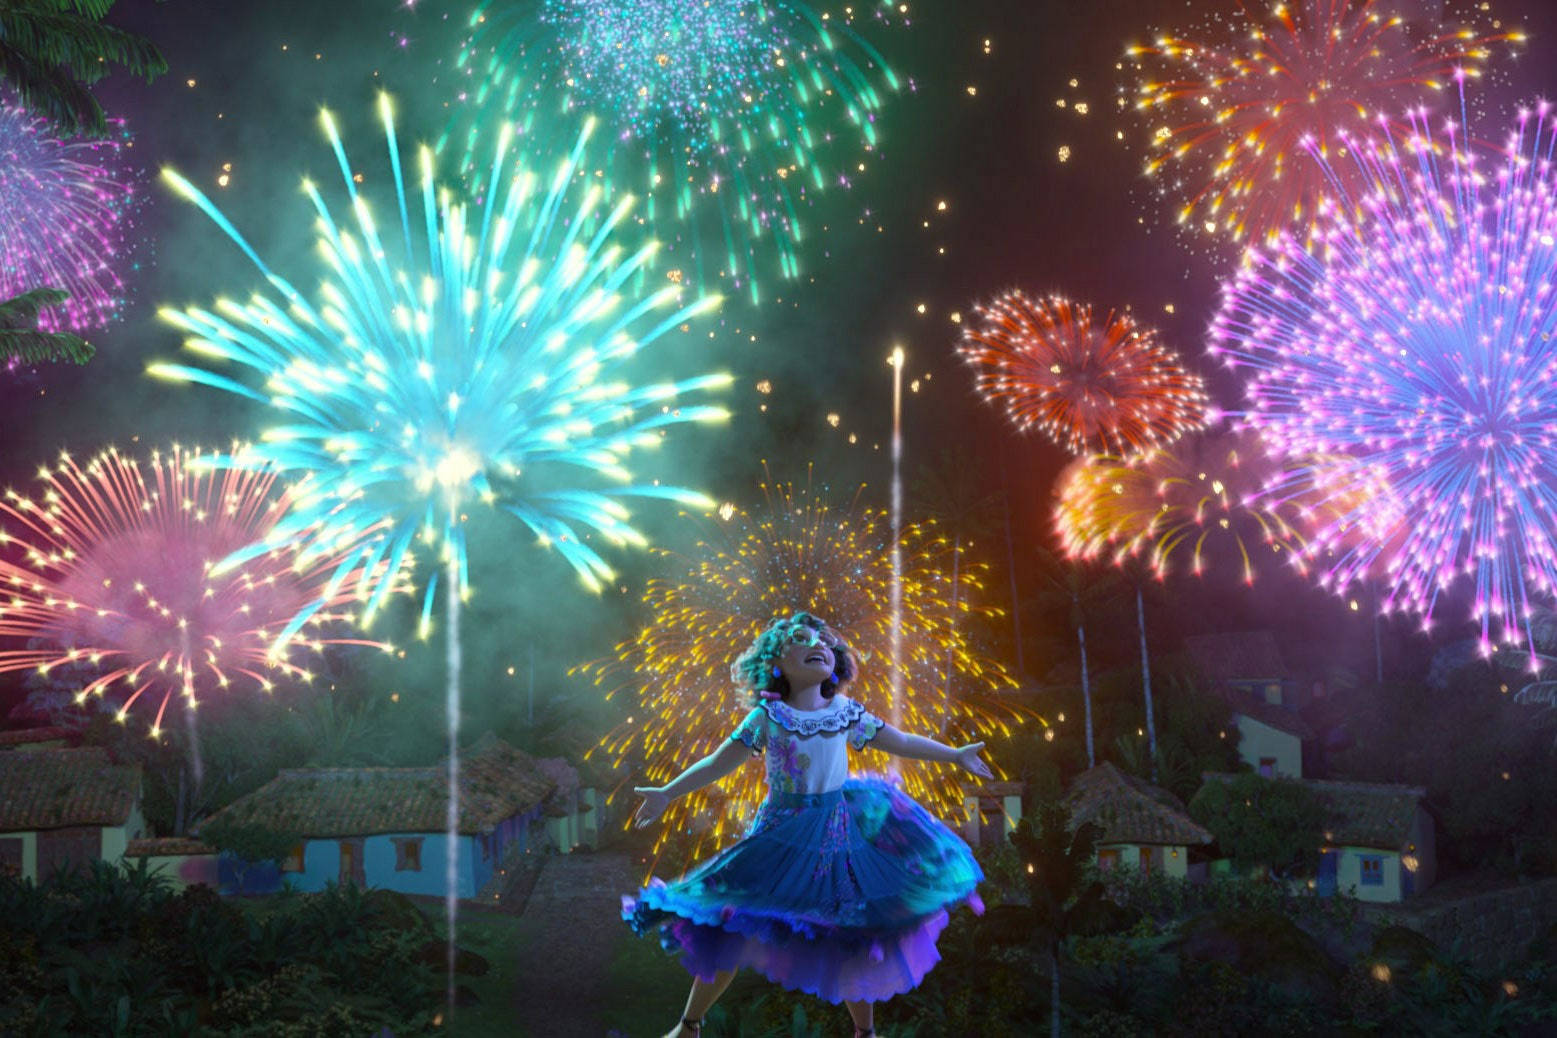 Einmädchen In Einem Blauen Kleid Tanzt Vor Feuerwerk. Wallpaper